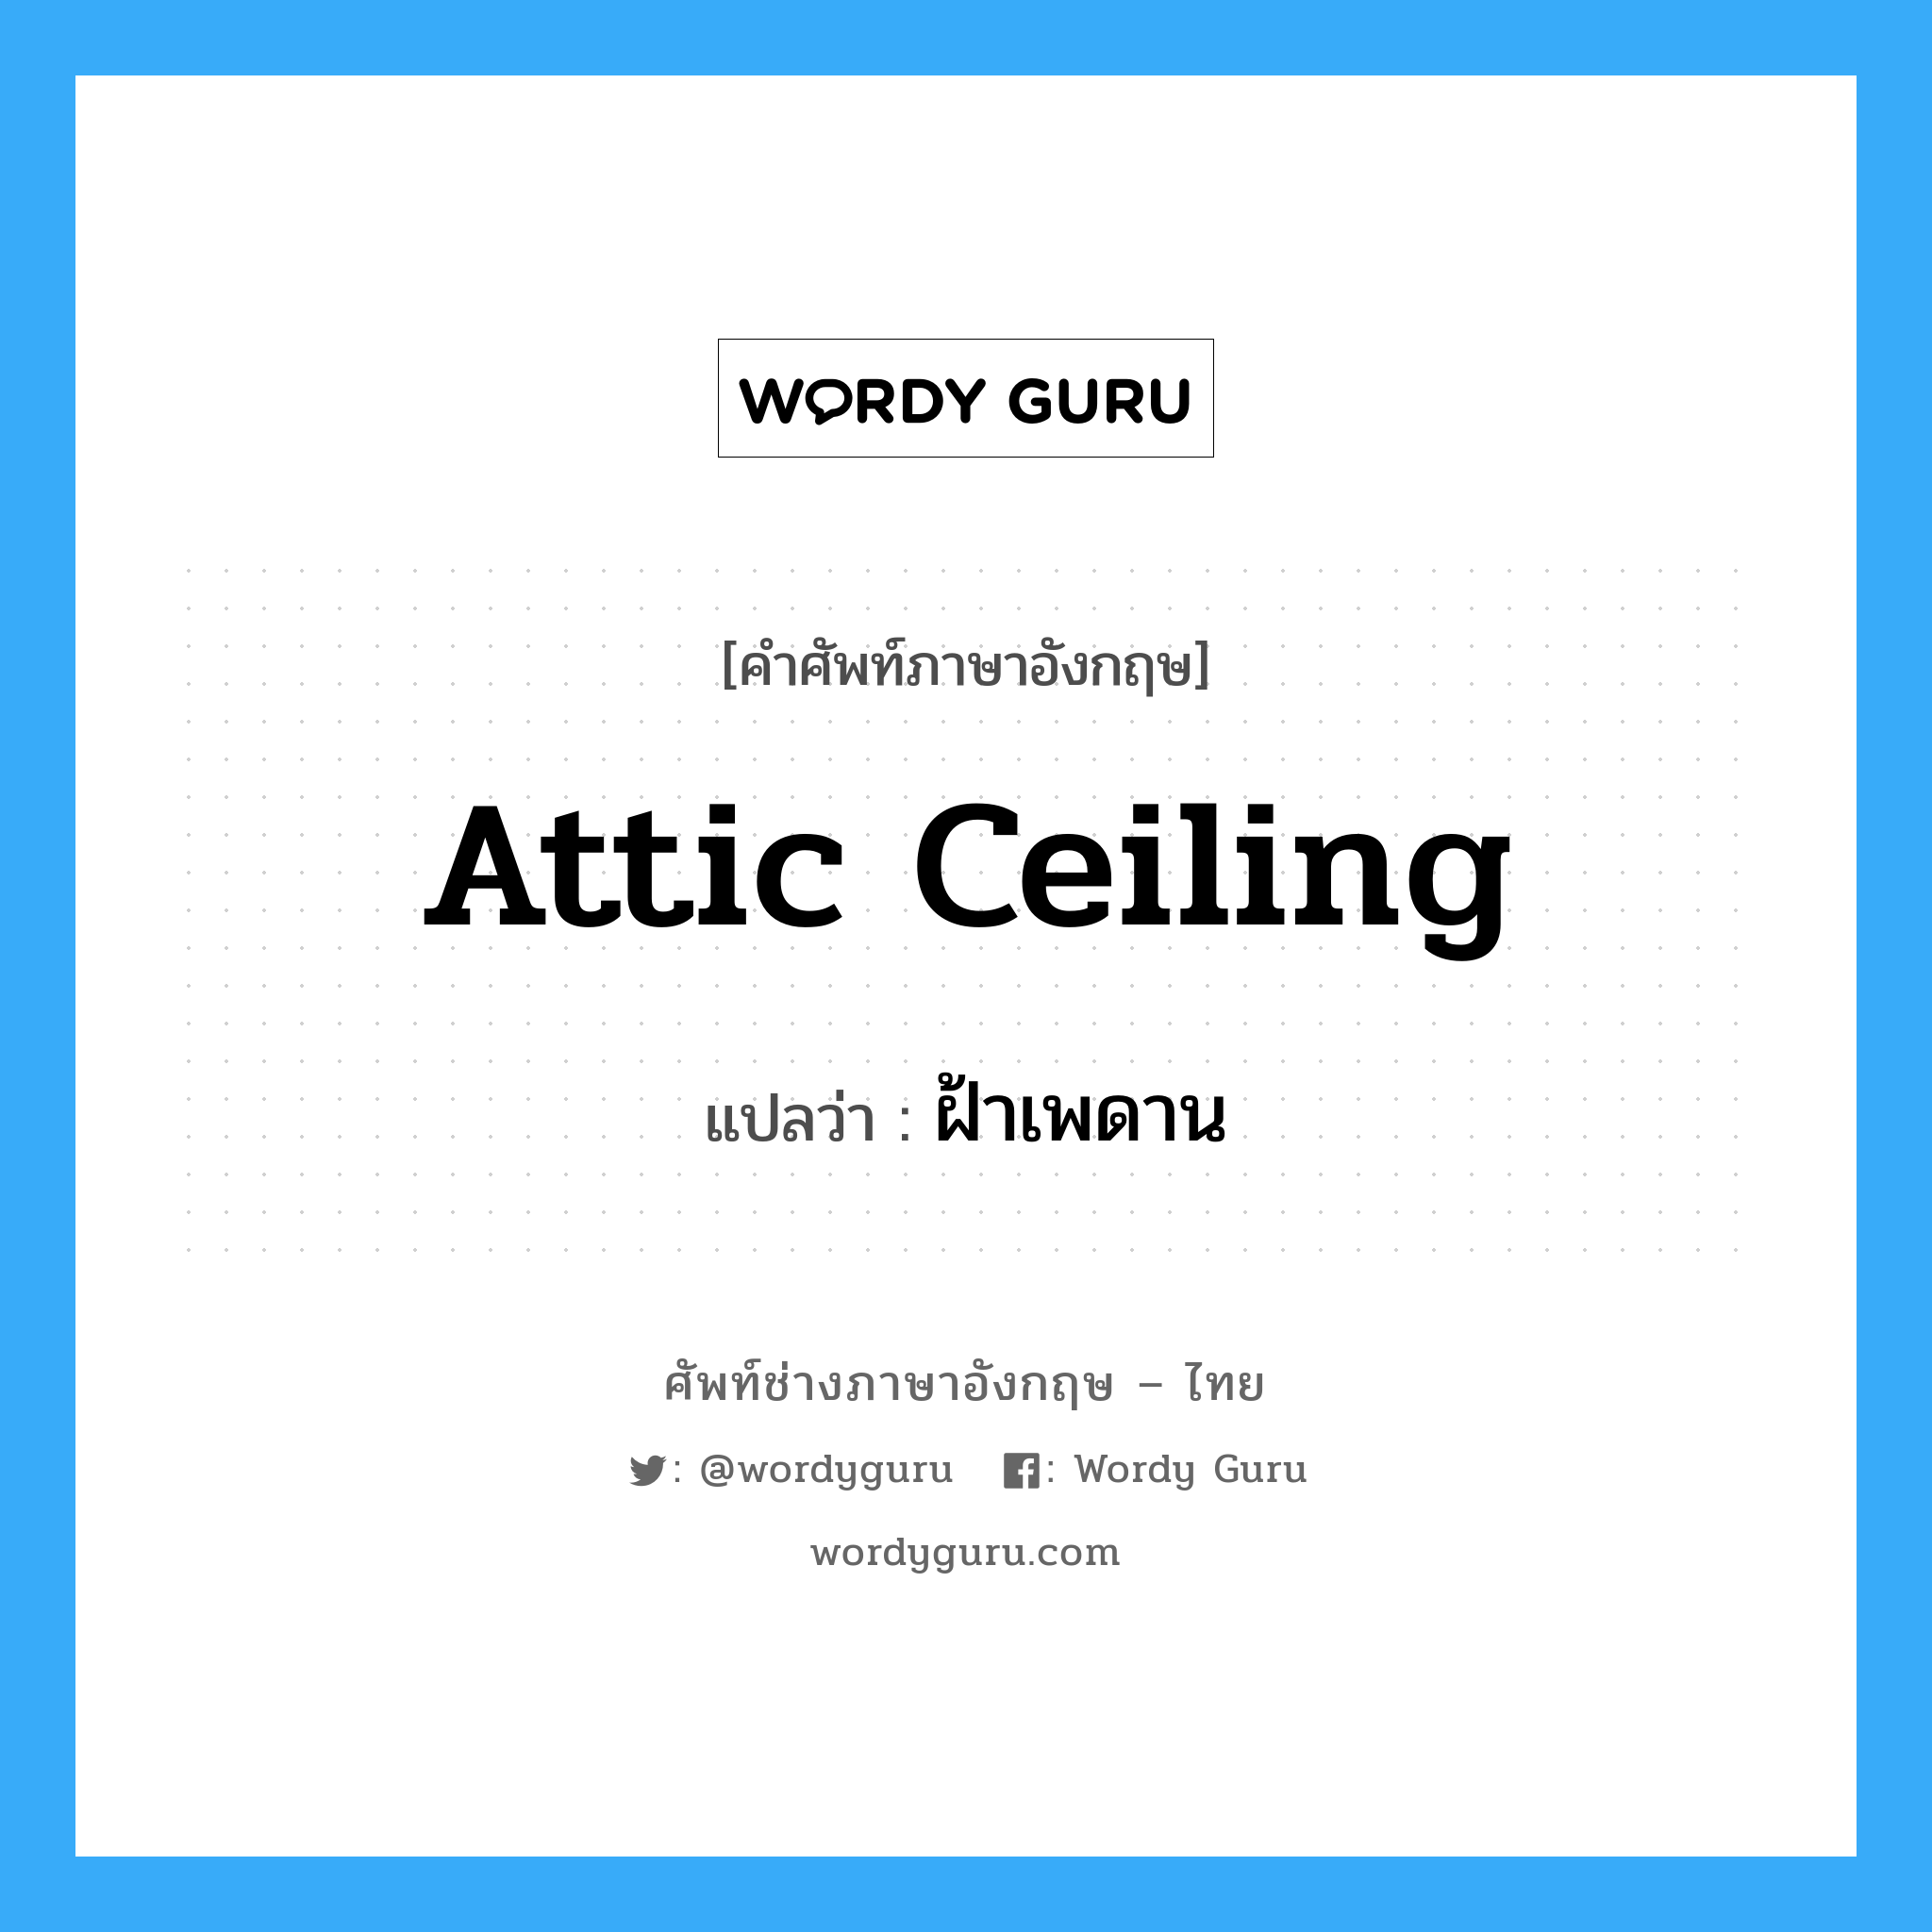 attic ceiling แปลว่า?, คำศัพท์ช่างภาษาอังกฤษ - ไทย attic ceiling คำศัพท์ภาษาอังกฤษ attic ceiling แปลว่า ฝ้าเพดาน